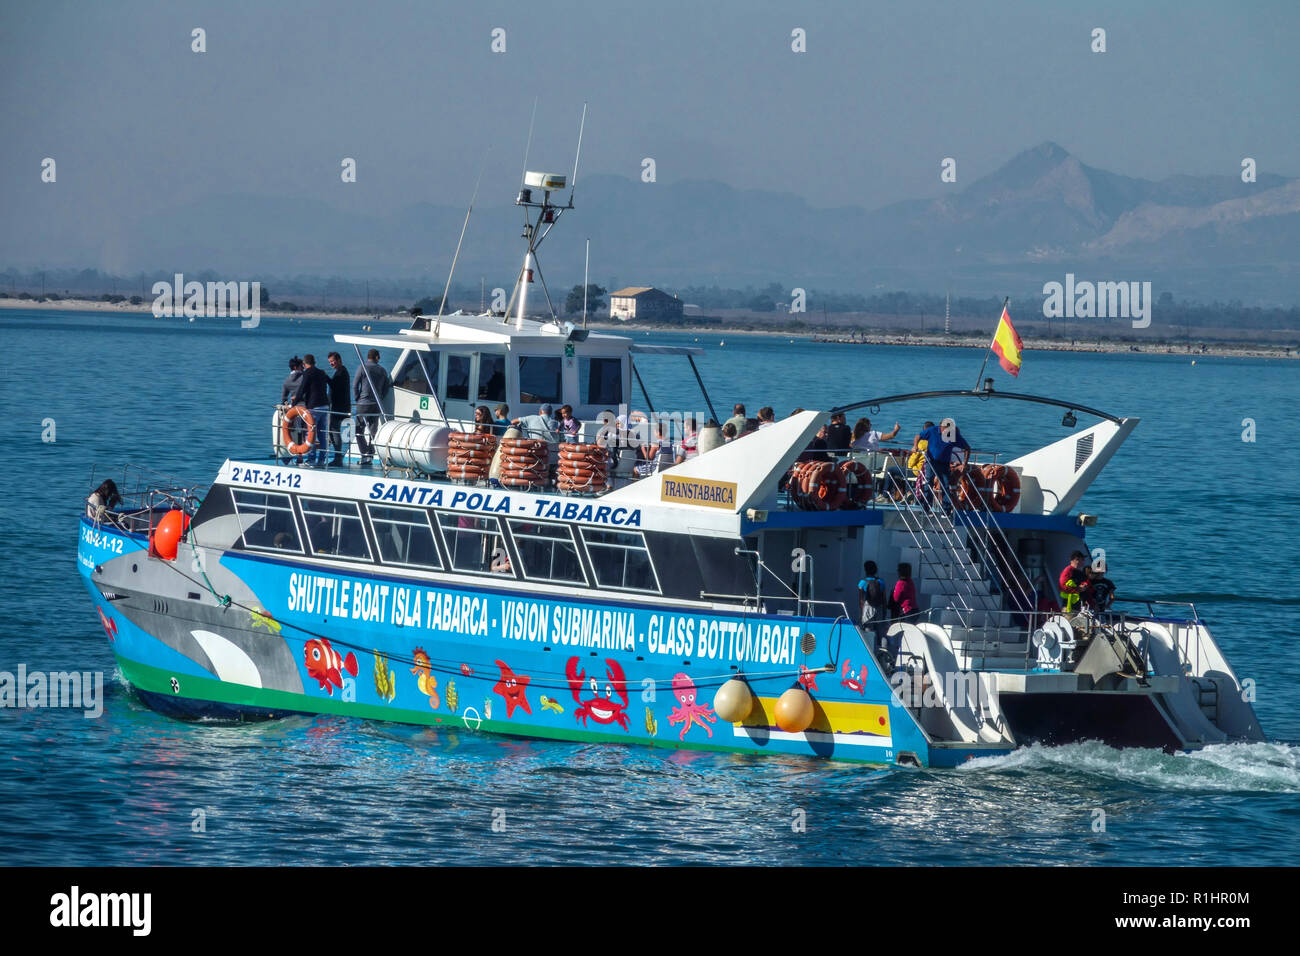 Espagne vacances Santa Pola, personnes sur le bateau navette Santa Pola - Tabarca  ferry, Costa Blanca personnes en Espagne Photo Stock - Alamy